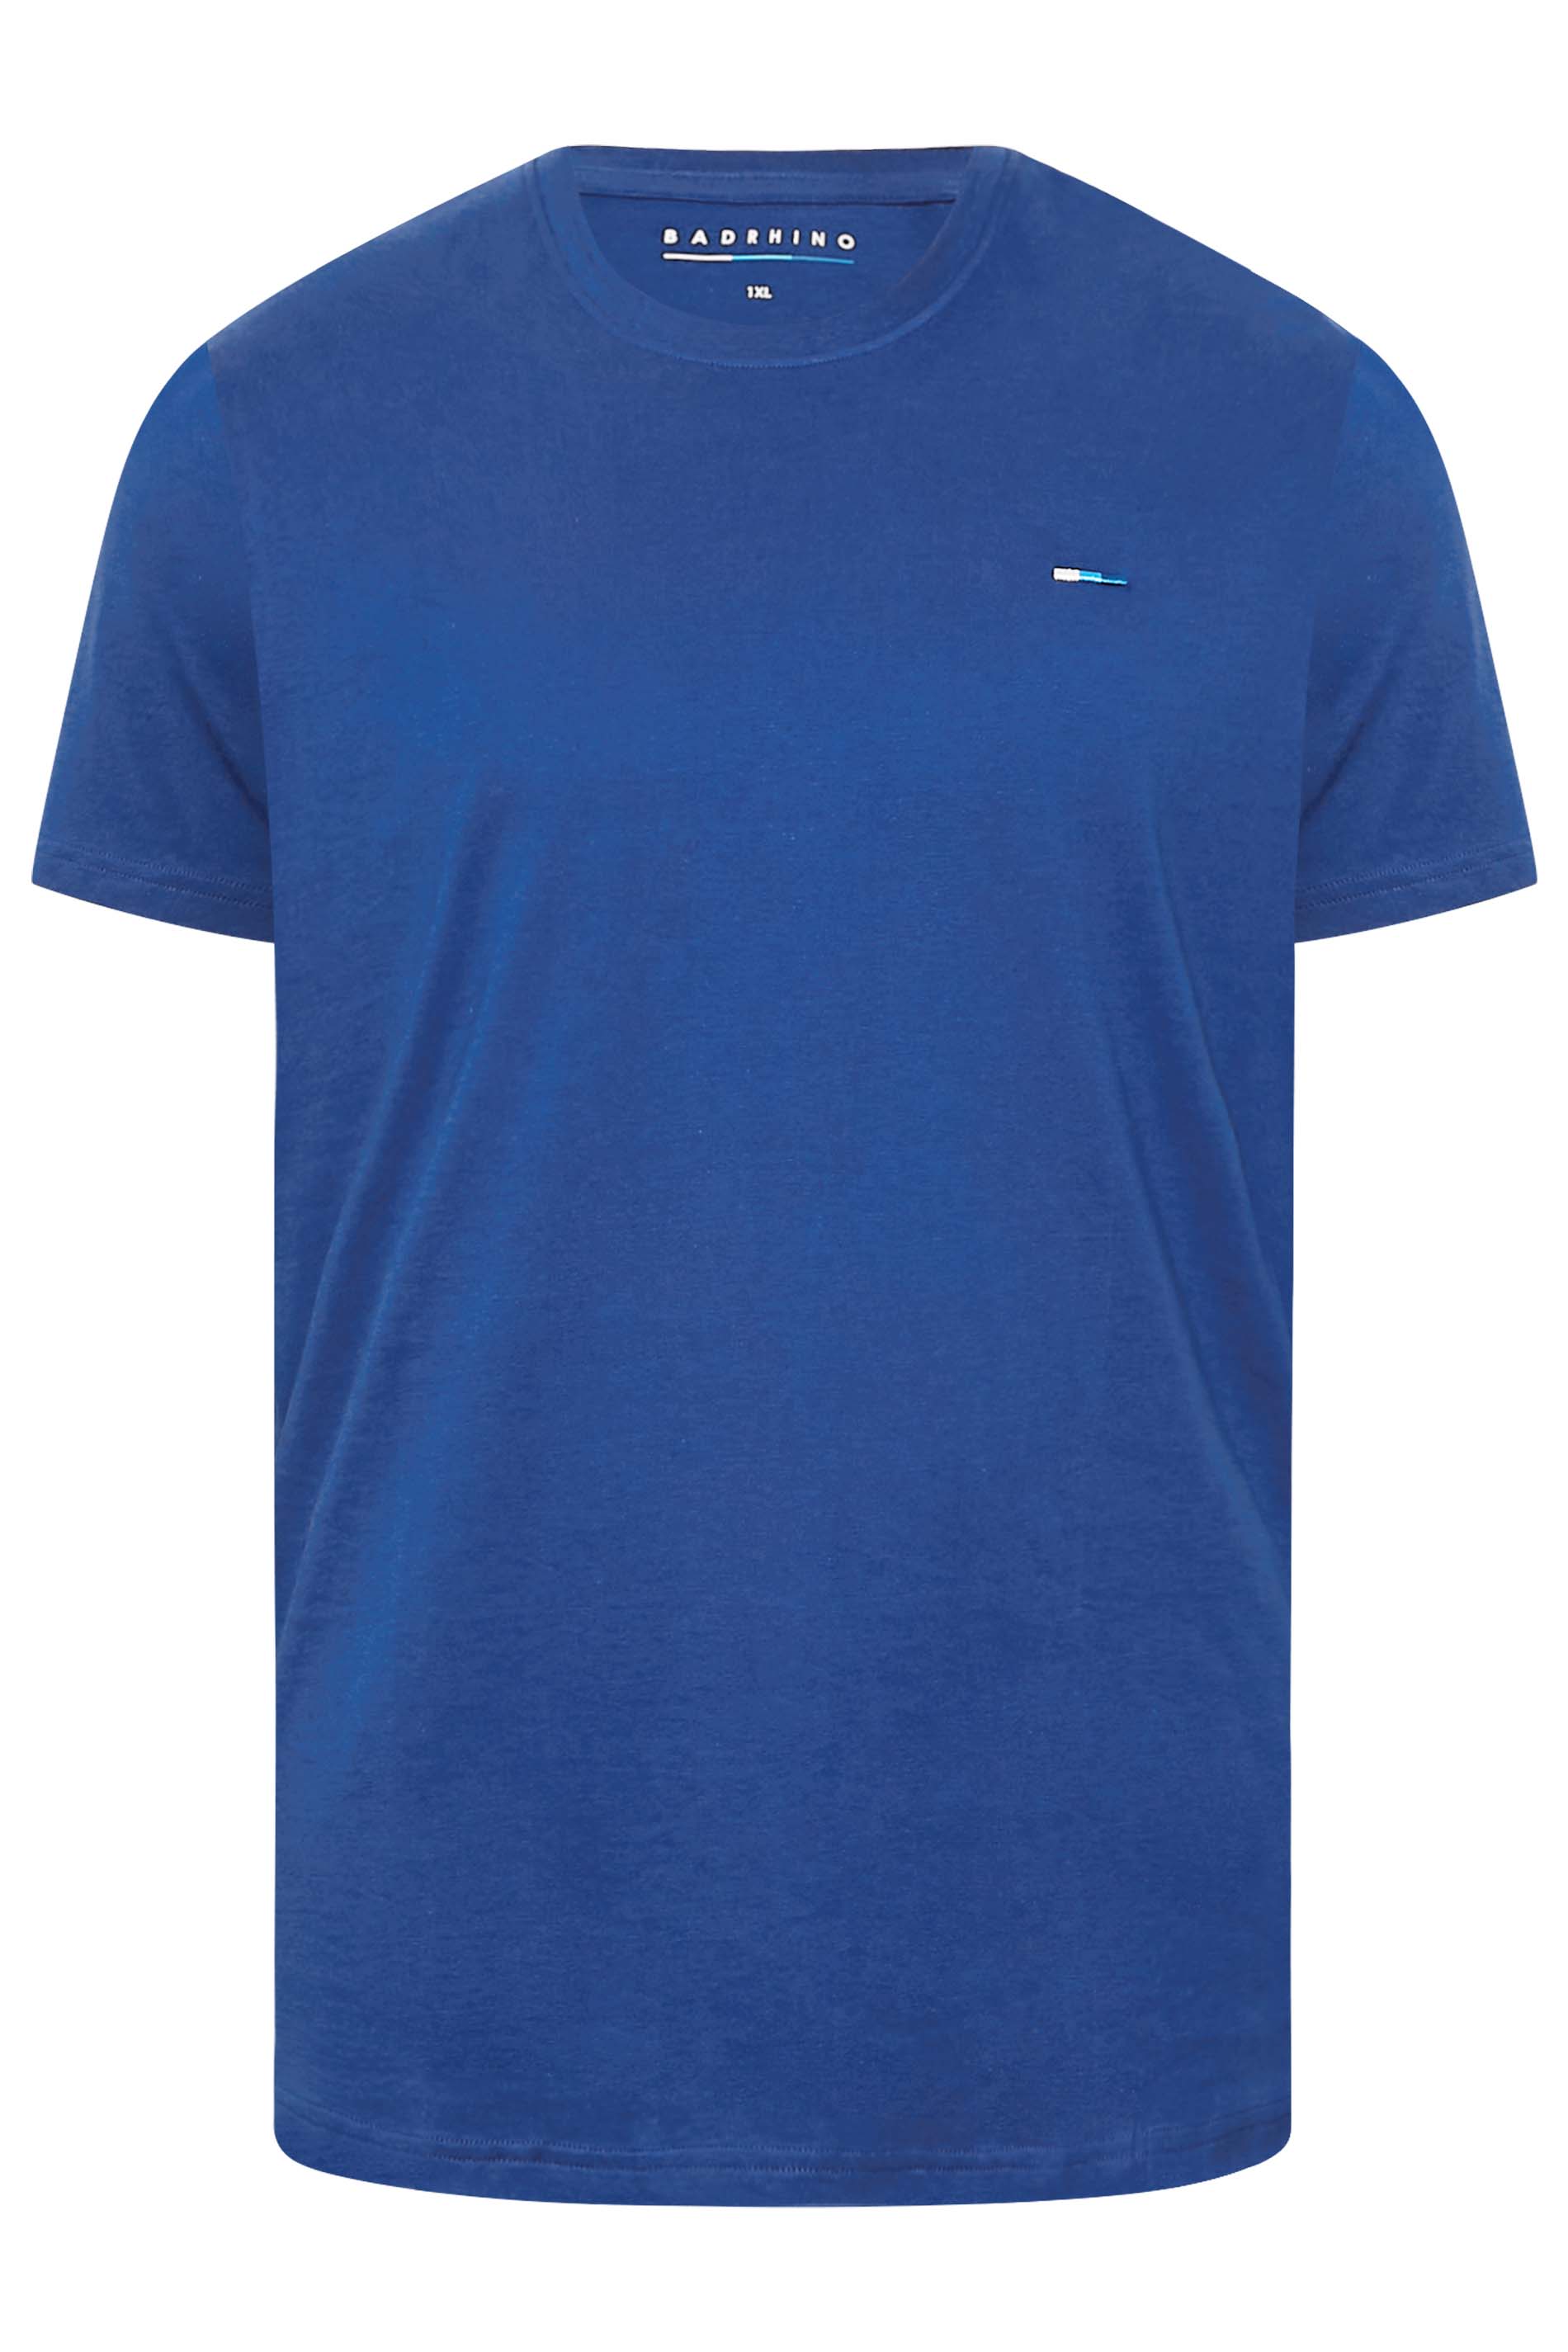 BadRhino Bright Blue Core T-Shirt | BadRhino 3